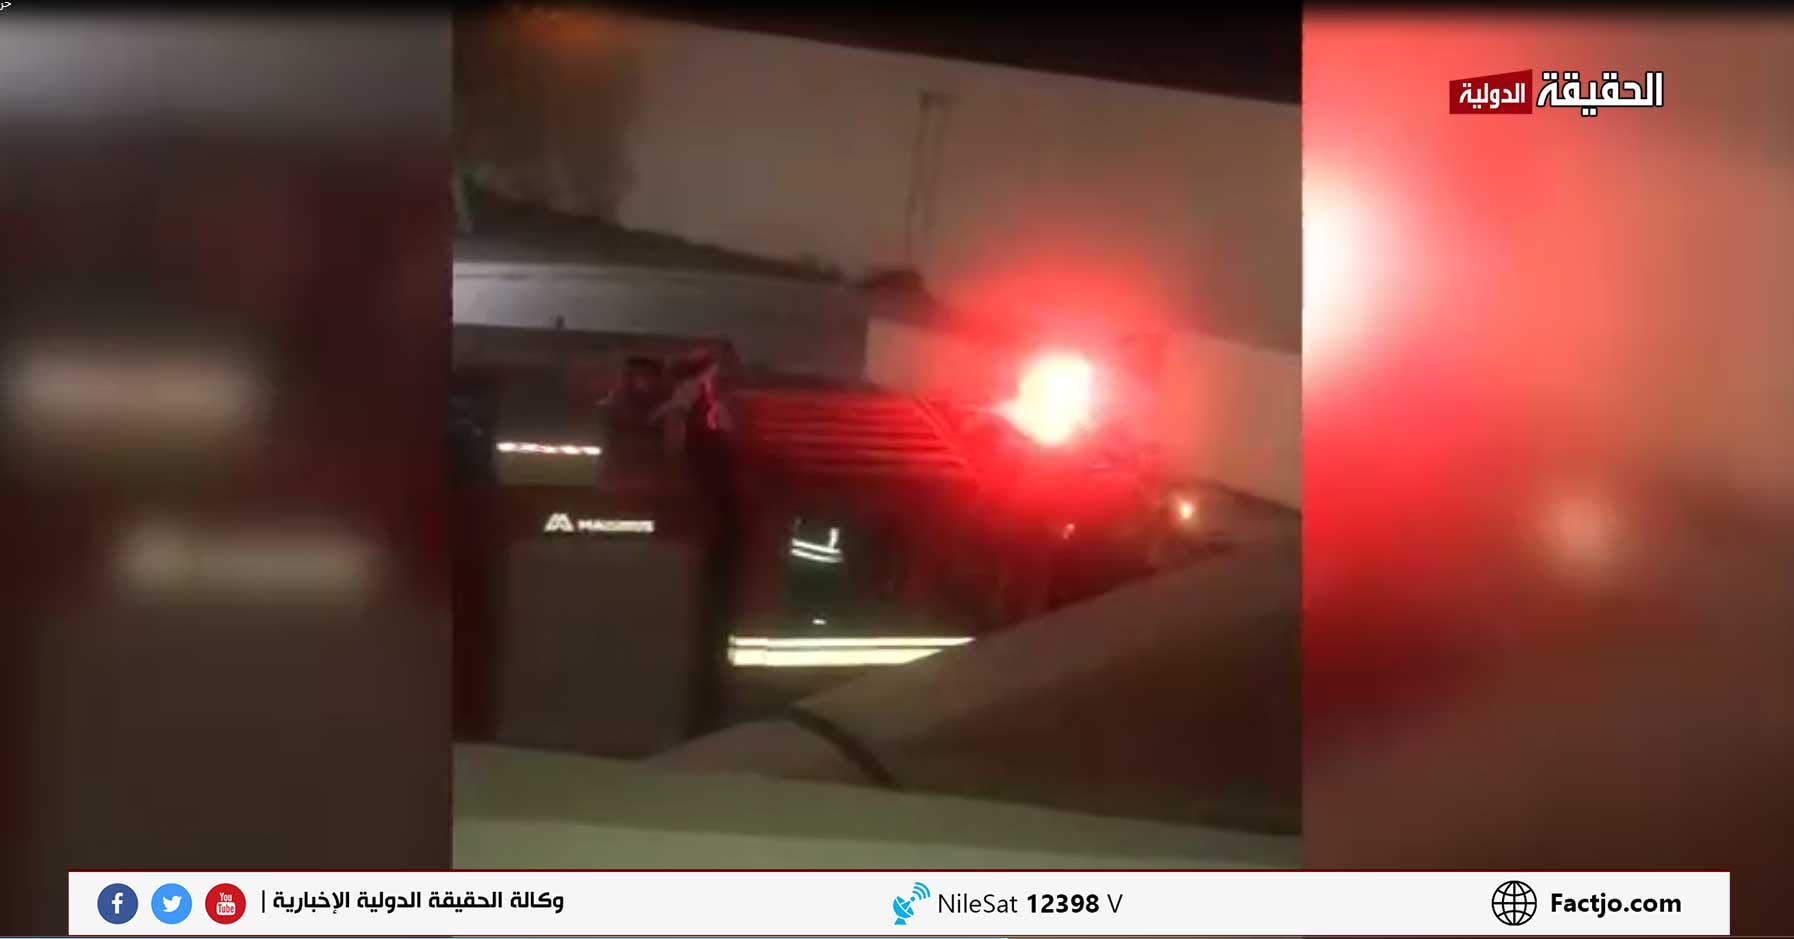  اصابتان بحريق شب في مستشفى الملكة رانيا بلواء البتراء  – فيديو